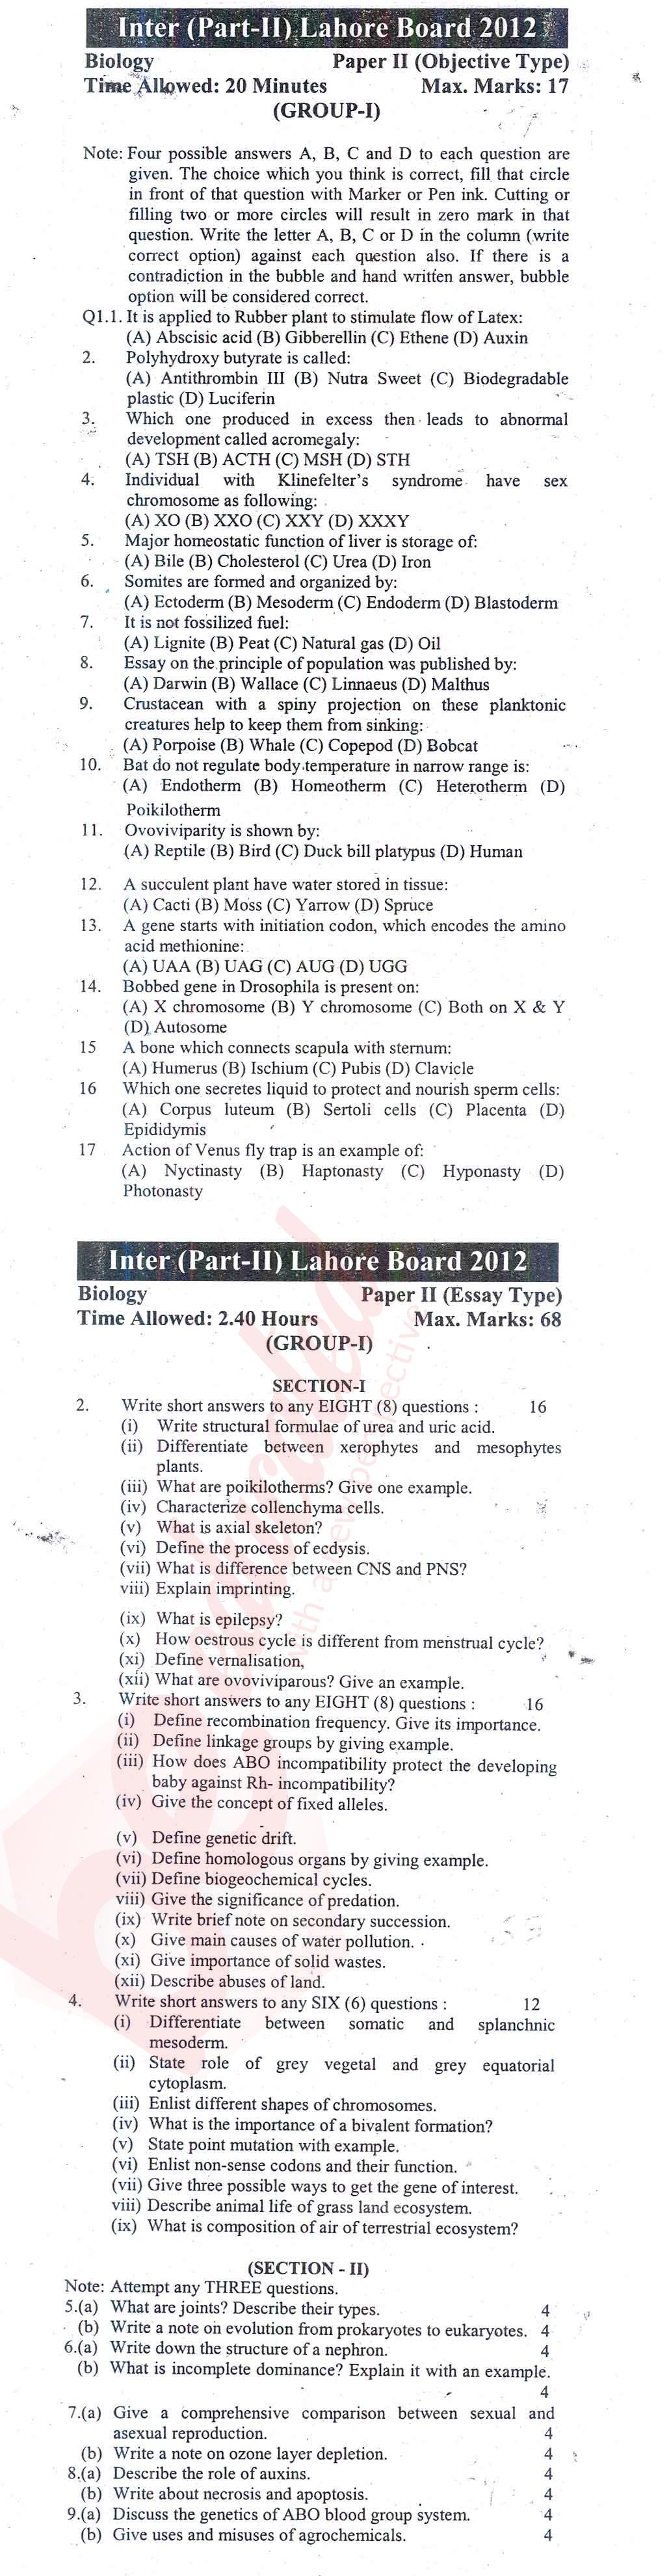 Biology FSC Part 2 Past Paper Group 1 BISE Lahore 2012